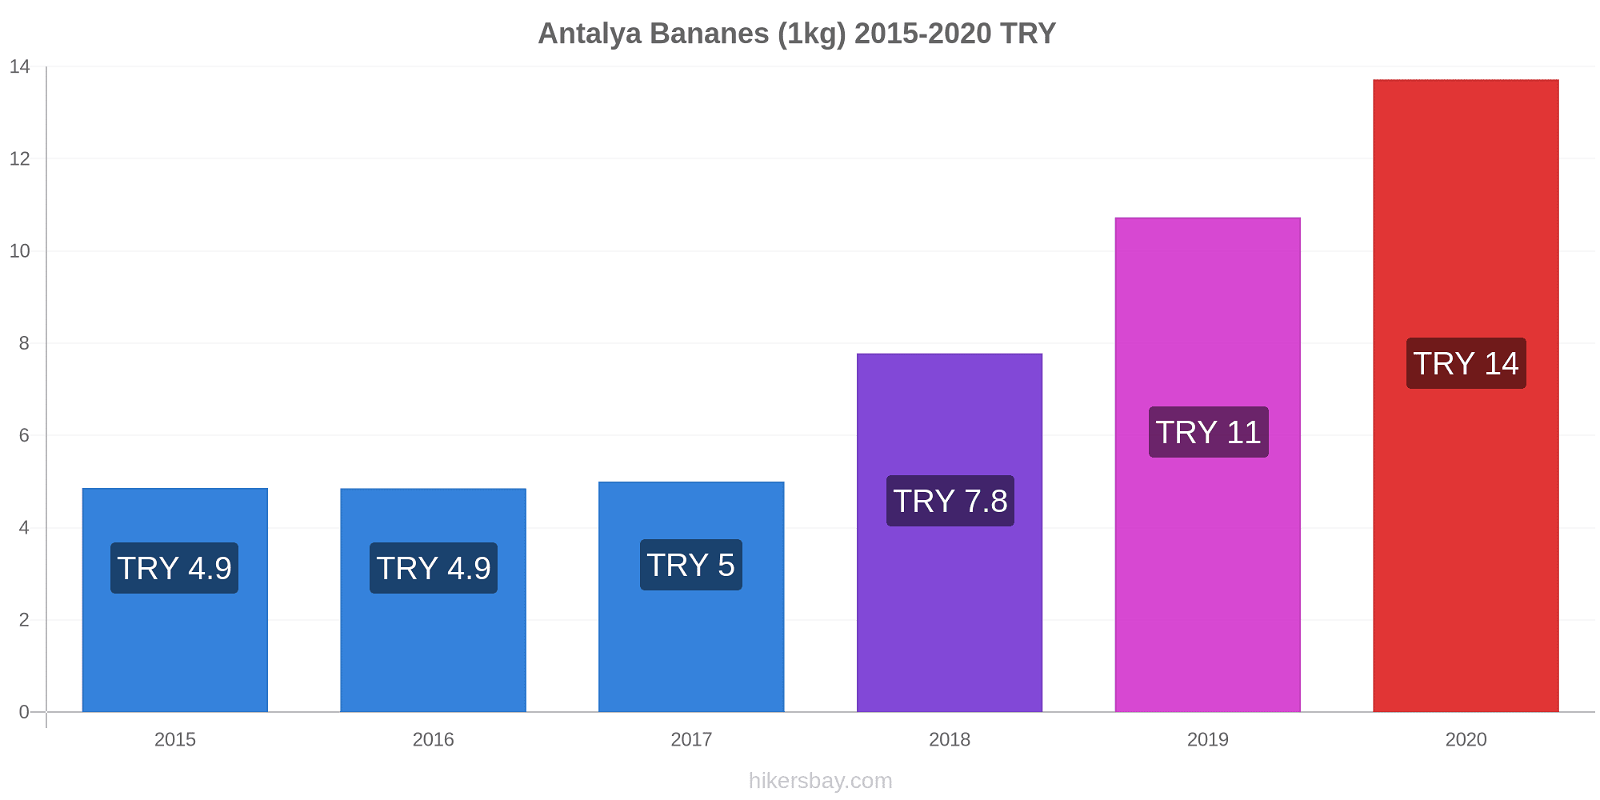 Antalya changements de prix Bananes (1kg) hikersbay.com